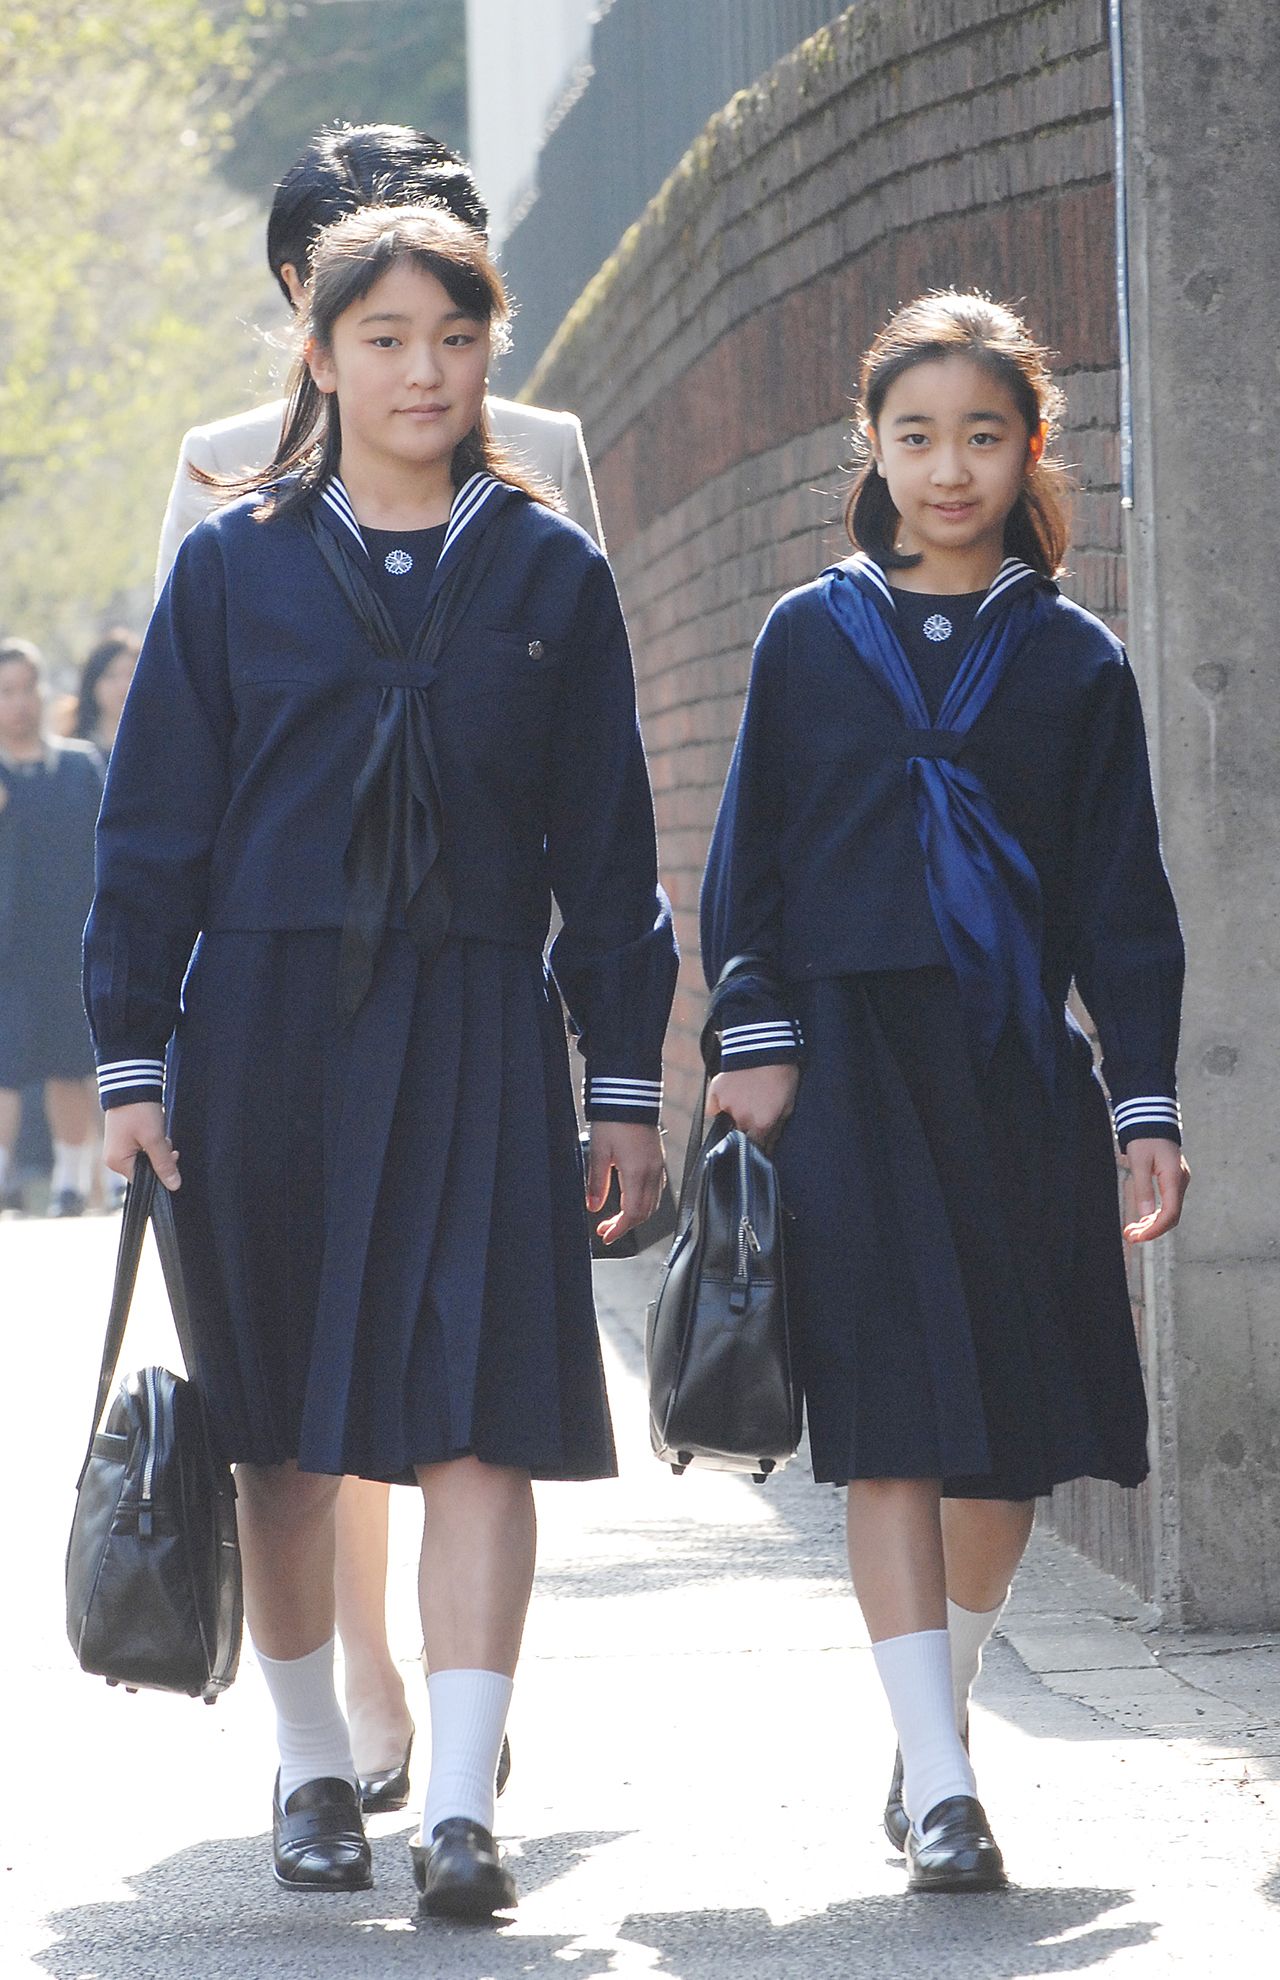 佳子さまの画像 写真 10年前 学習院女子高等科と中等科の入学式に向かわれる眞子さまと佳子さま 07年4月 50枚目 週刊女性prime